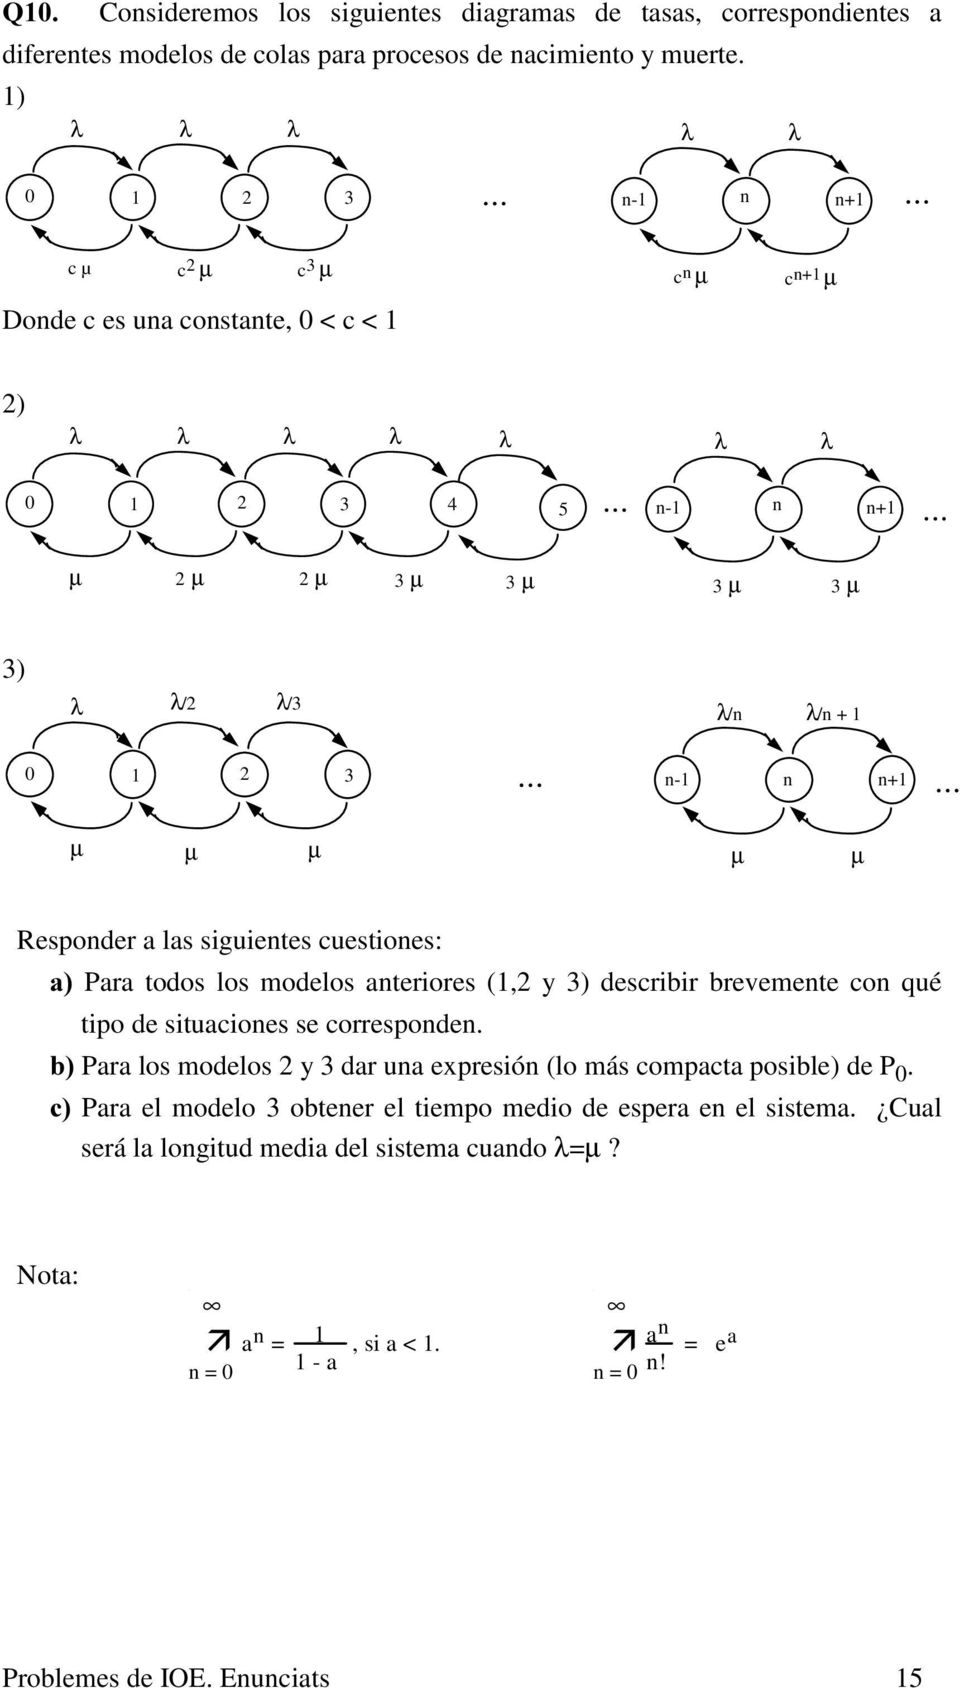 3 n-1 n n+1 µ µ µ µ µ Responder a las siguientes cuestiones: D Para todos los modelos anteriores (1,2 y 3) describir brevemente con qué tipo de situaciones se corresponden.